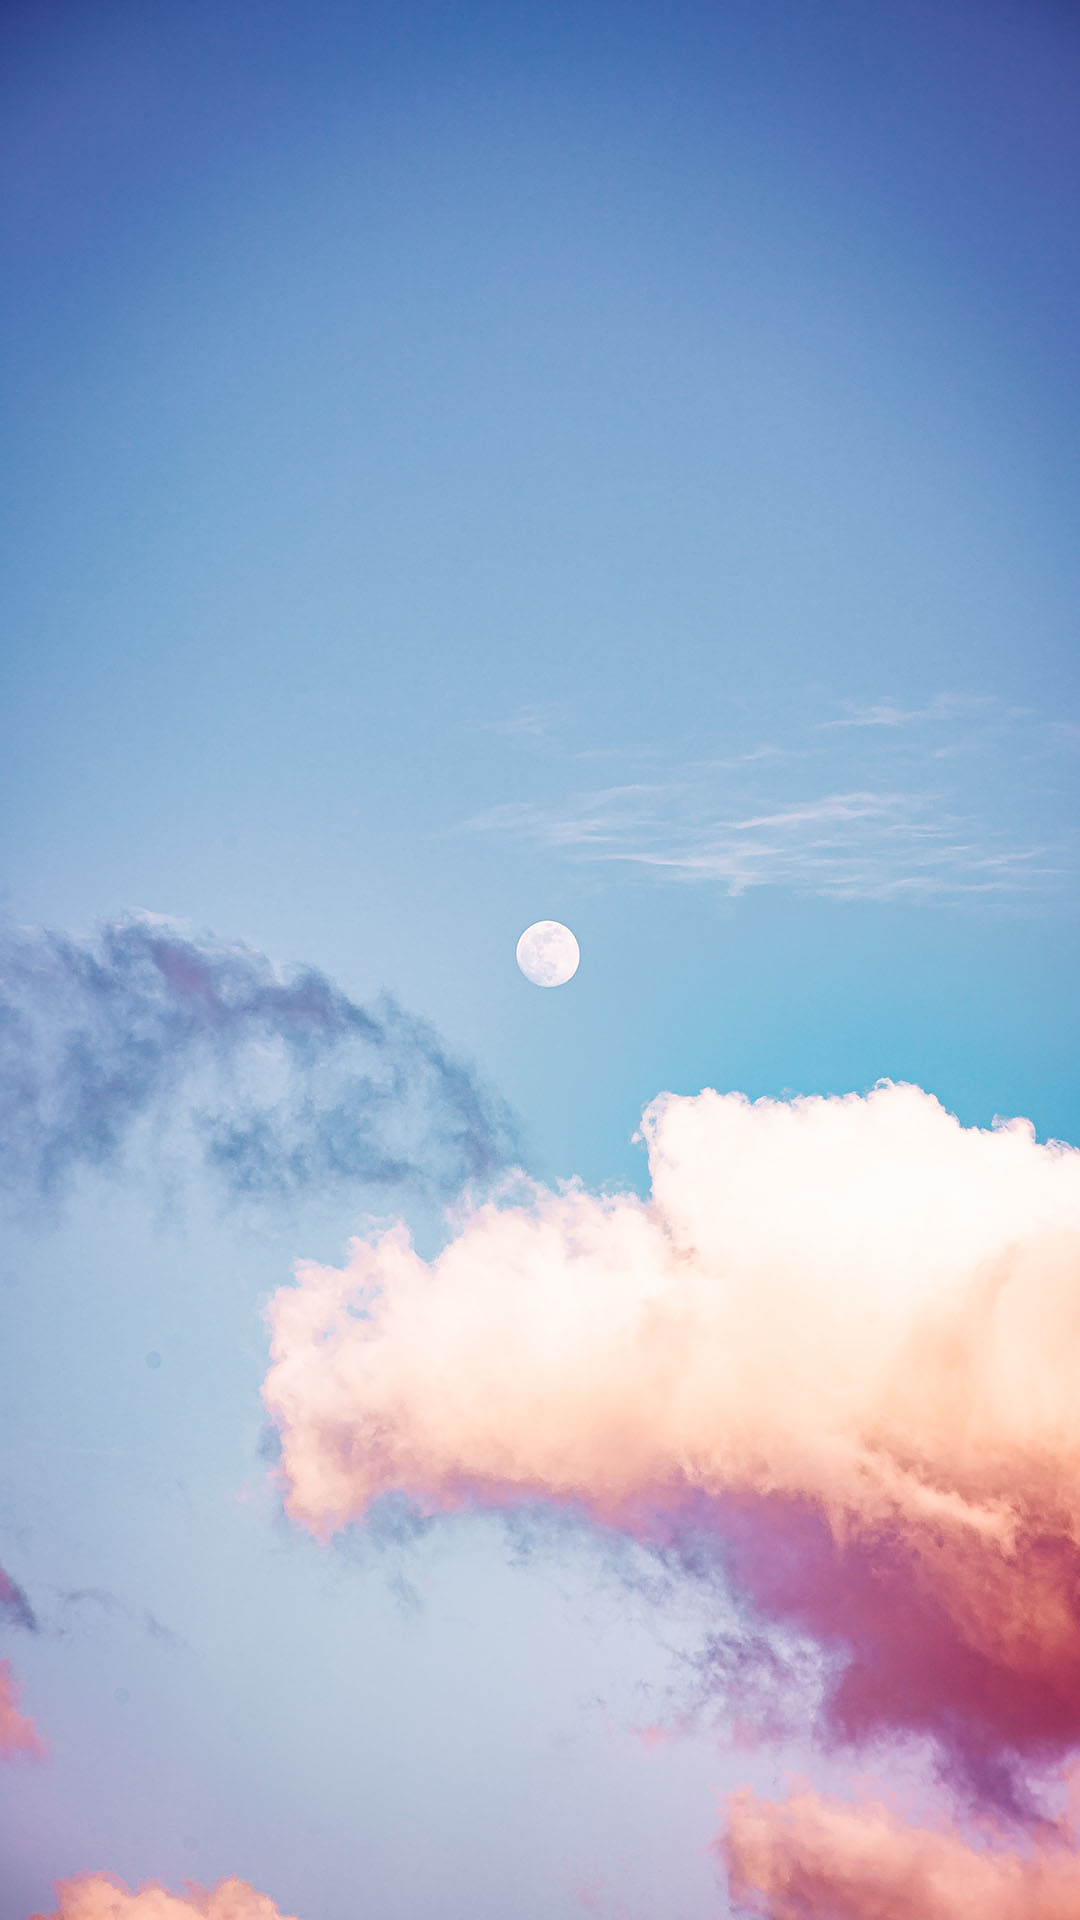 Hãy chiêm ngưỡng những bức ảnh về mây đẹp tuyệt vời nhất, với các hình dáng và màu sắc độc đáo, khiến cảm giác của bạn thăng hoa.